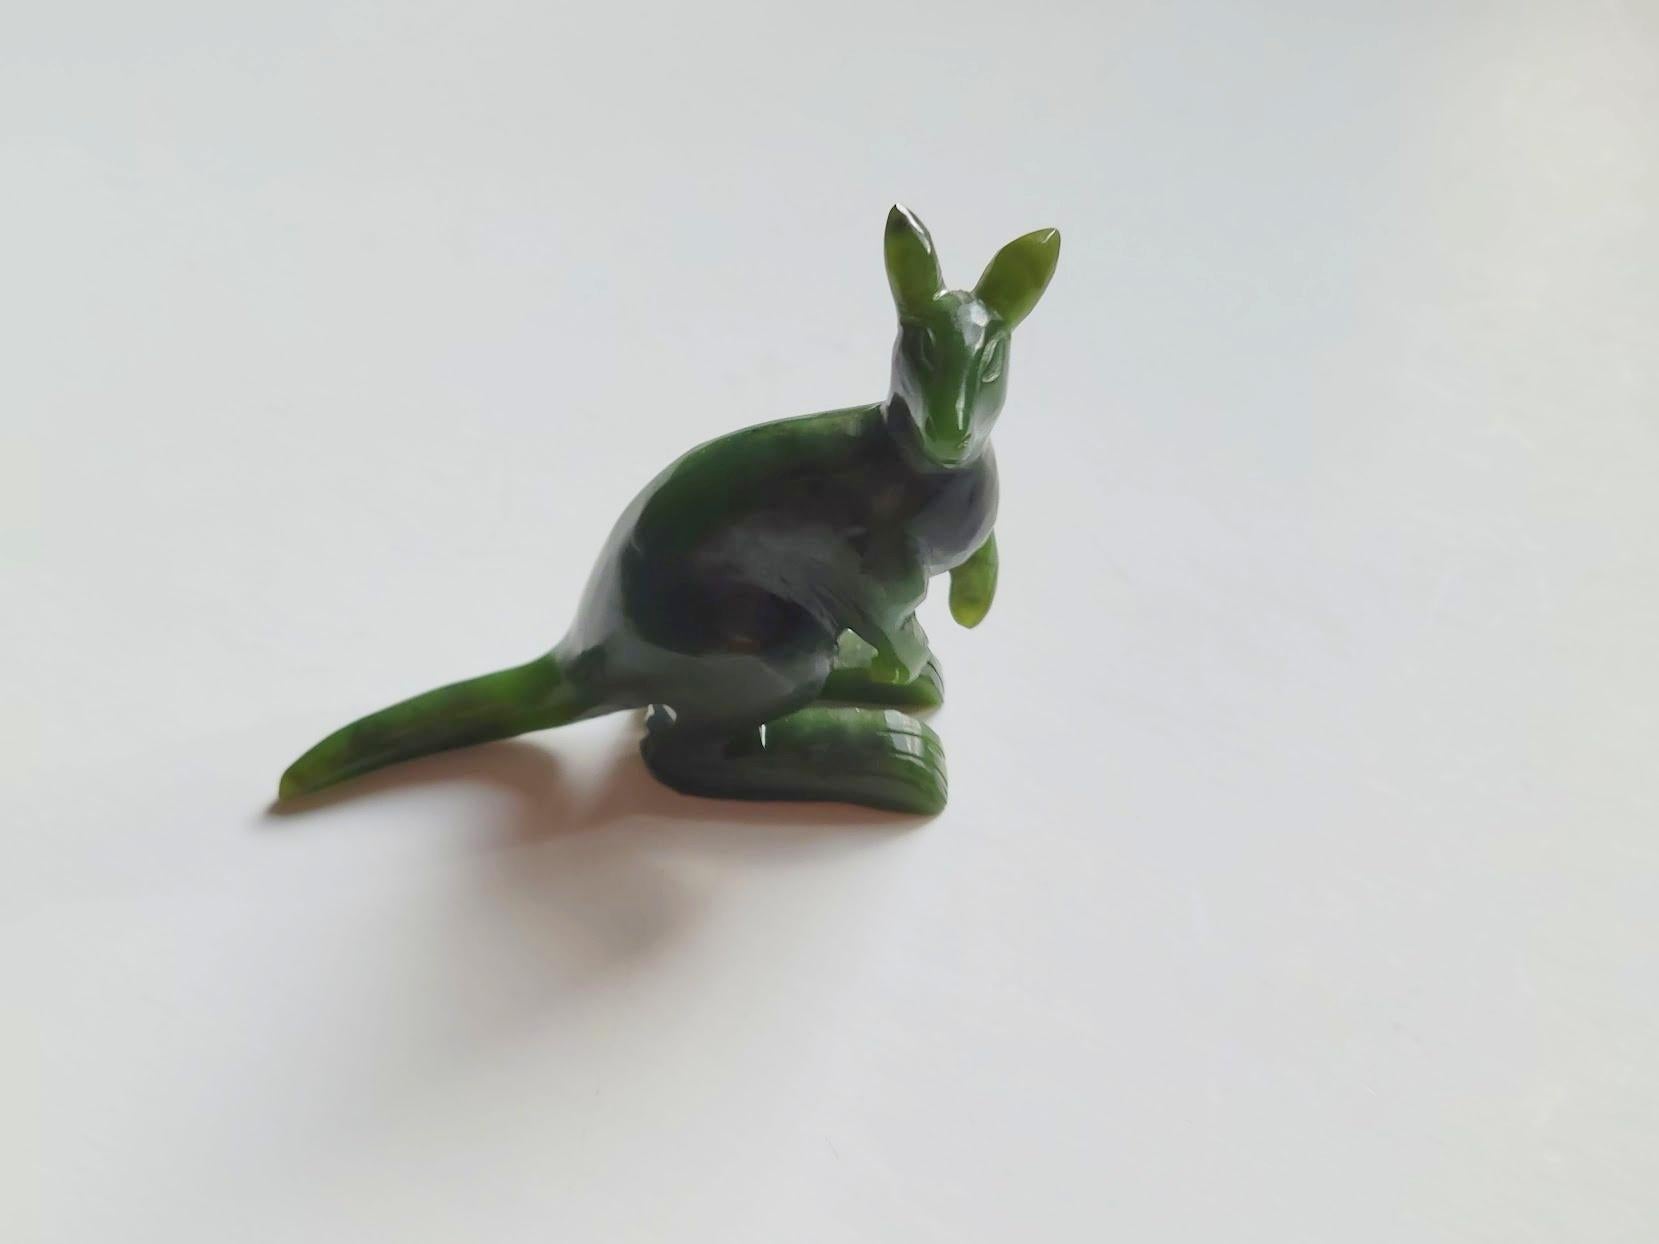 Zu allen Zeiten waren Miniatur-Tierfiguren aus Halbedelsteinen sehr beliebte Geschenke. 
Dieses charmante Känguru ist eine atemberaubende Verkörperung exquisiter Handwerkskunst, sorgfältig aus kanadischem Nephrit geschnitzt und makellos poliert.